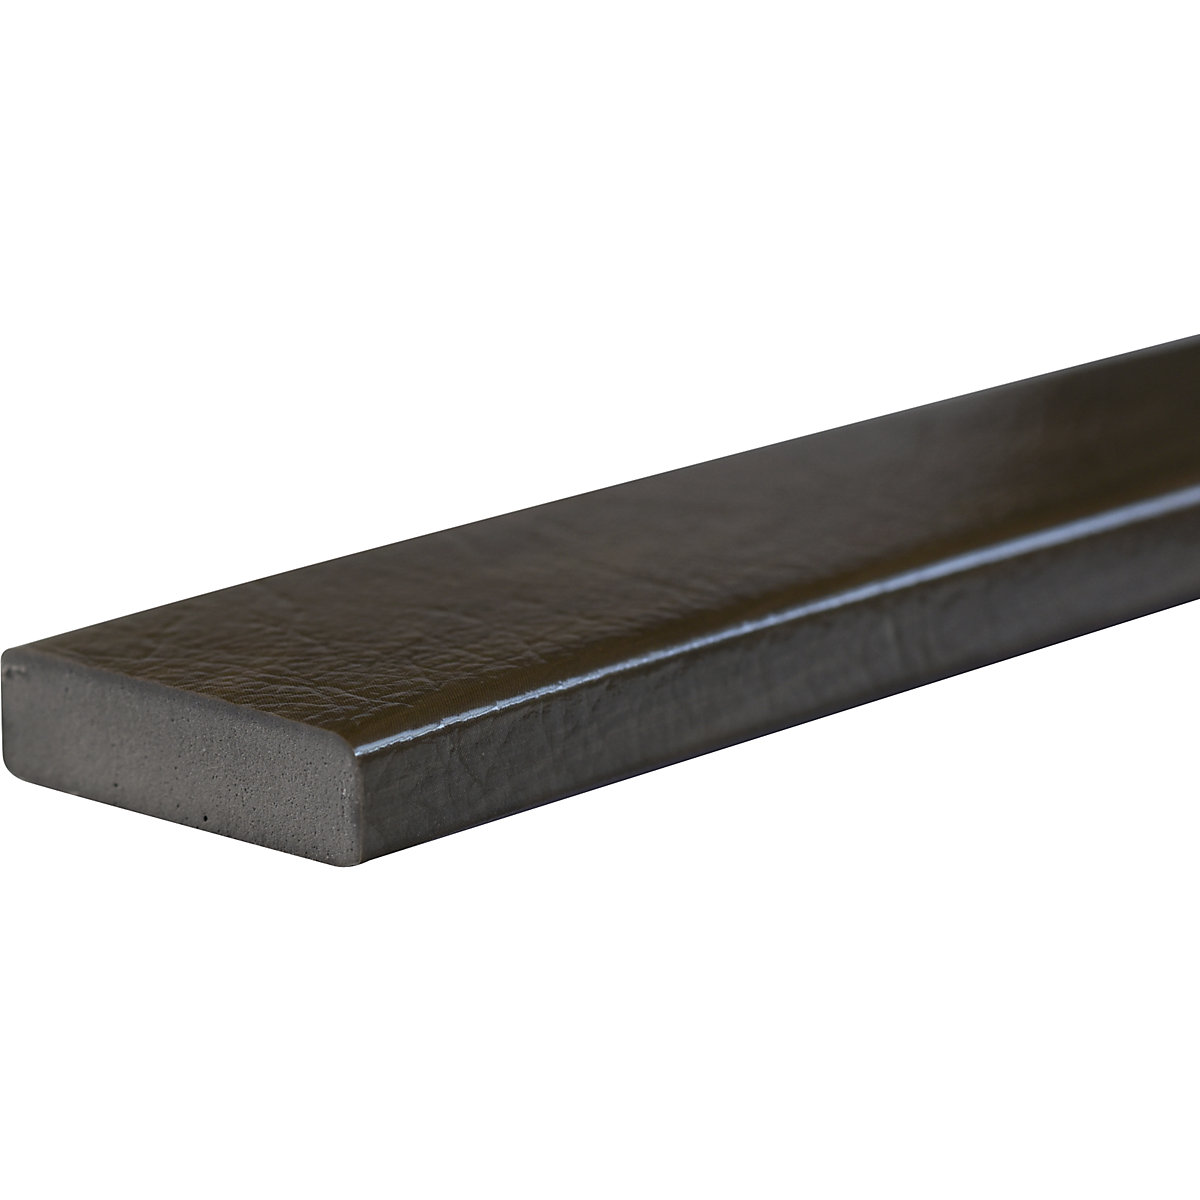 Zabezpieczenie powierzchni Knuffi® – SHG, typ S, szt. 1 m, imitacja drewna, khaki-28